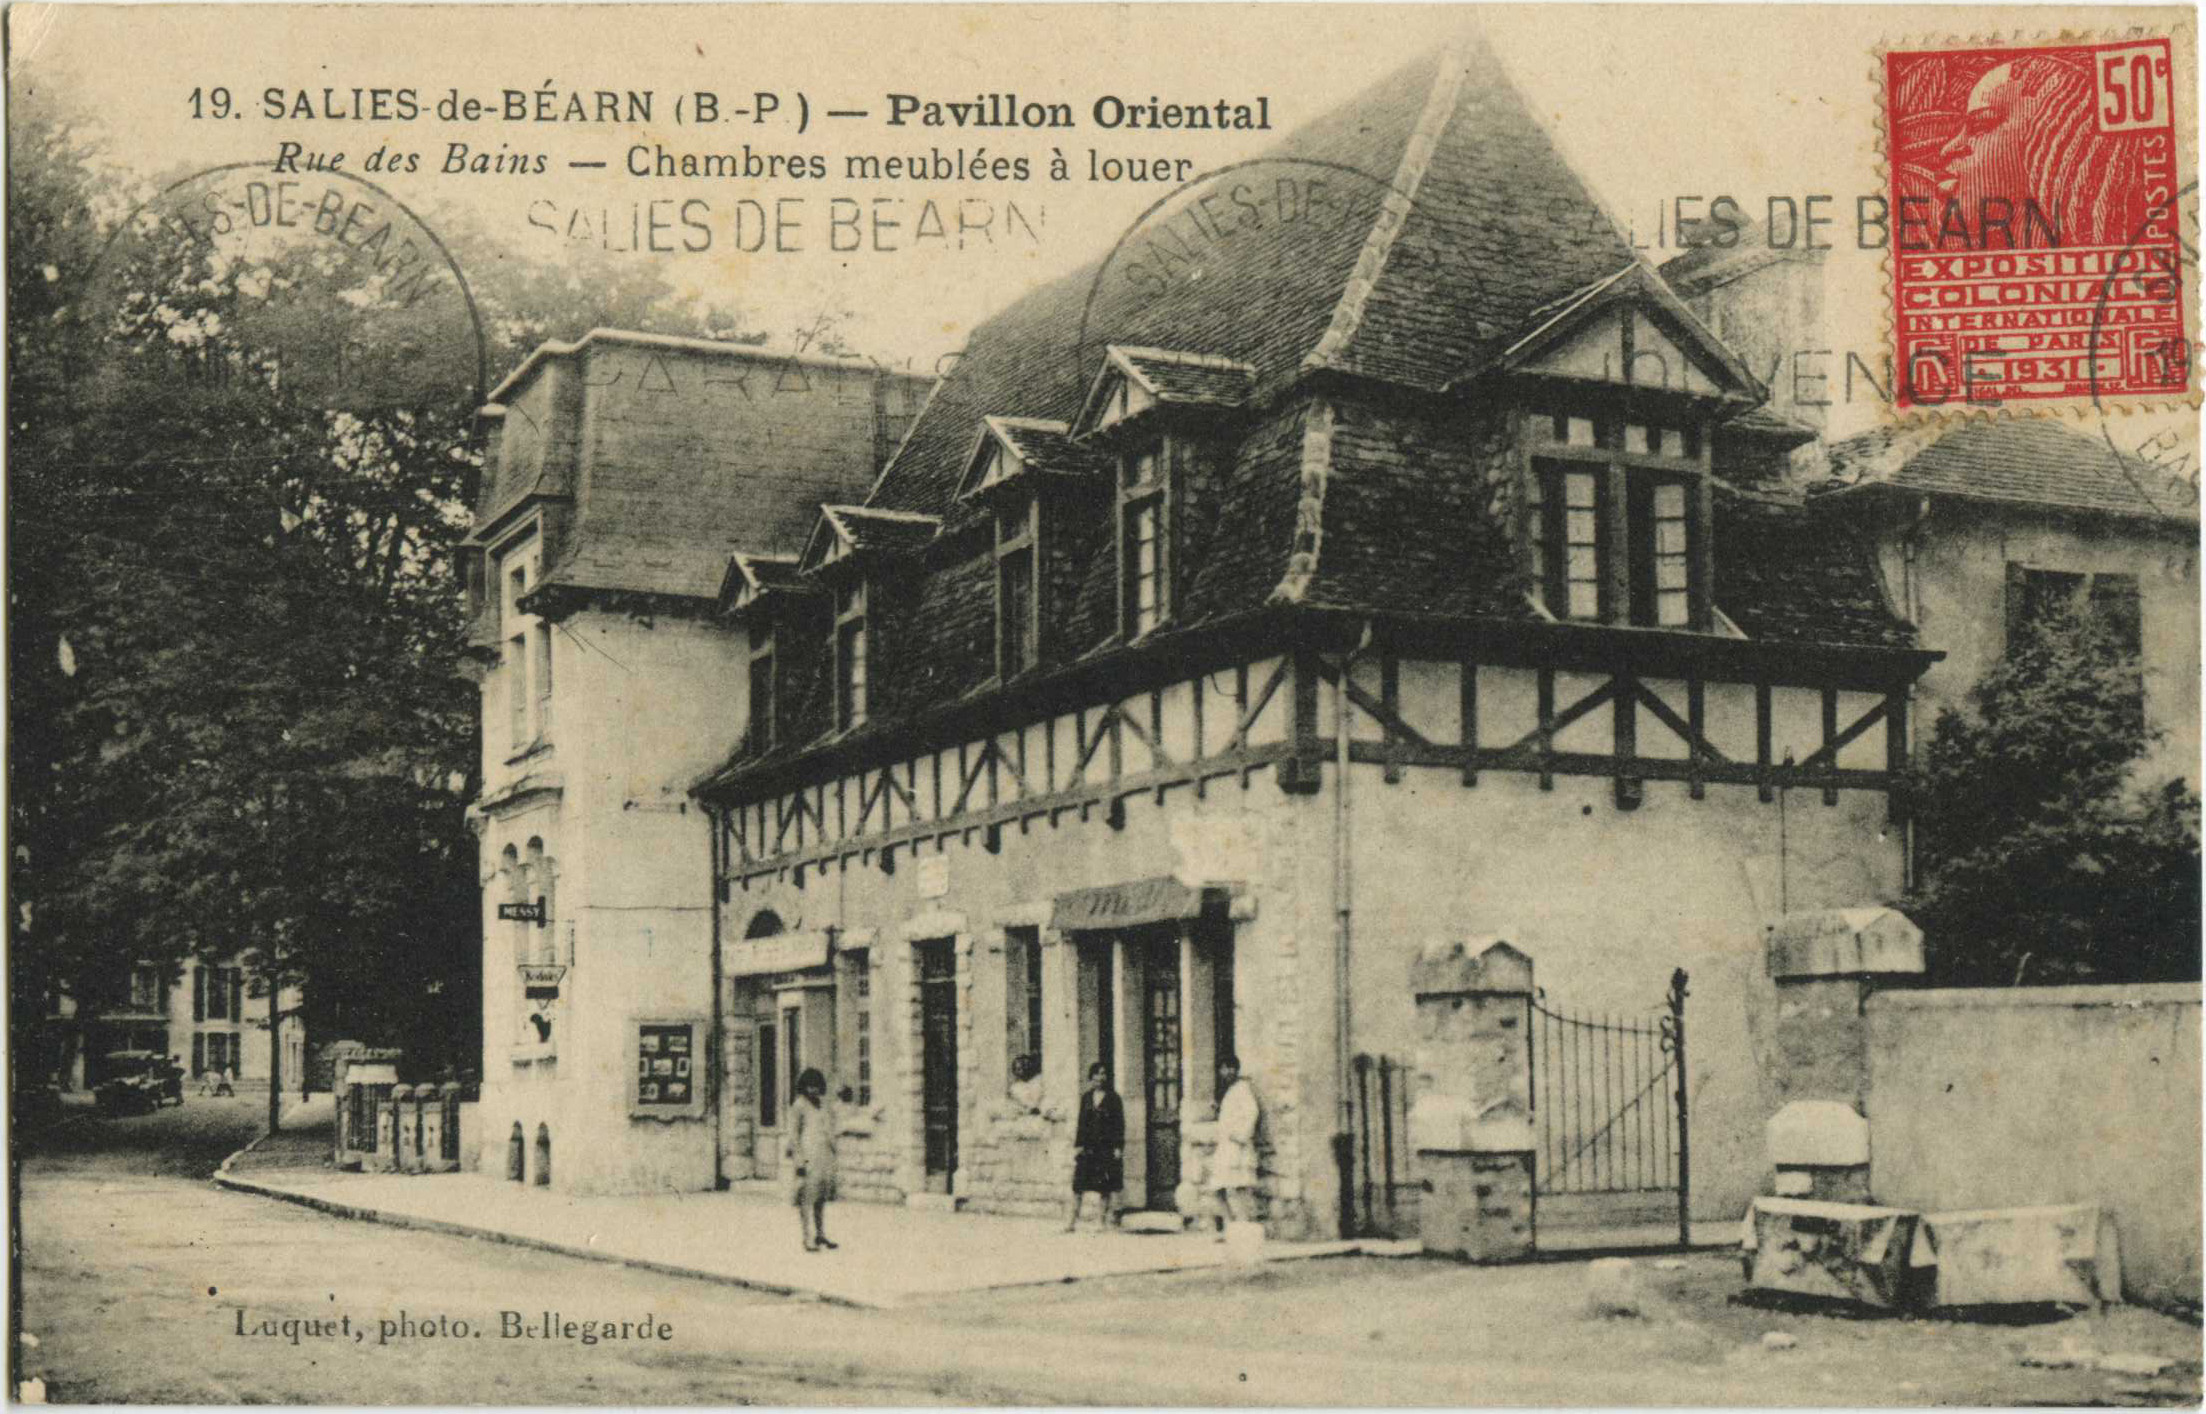 Salies-de-Béarn - Pavillon Oriental - Rue des Bains - Chambres meublées à louer